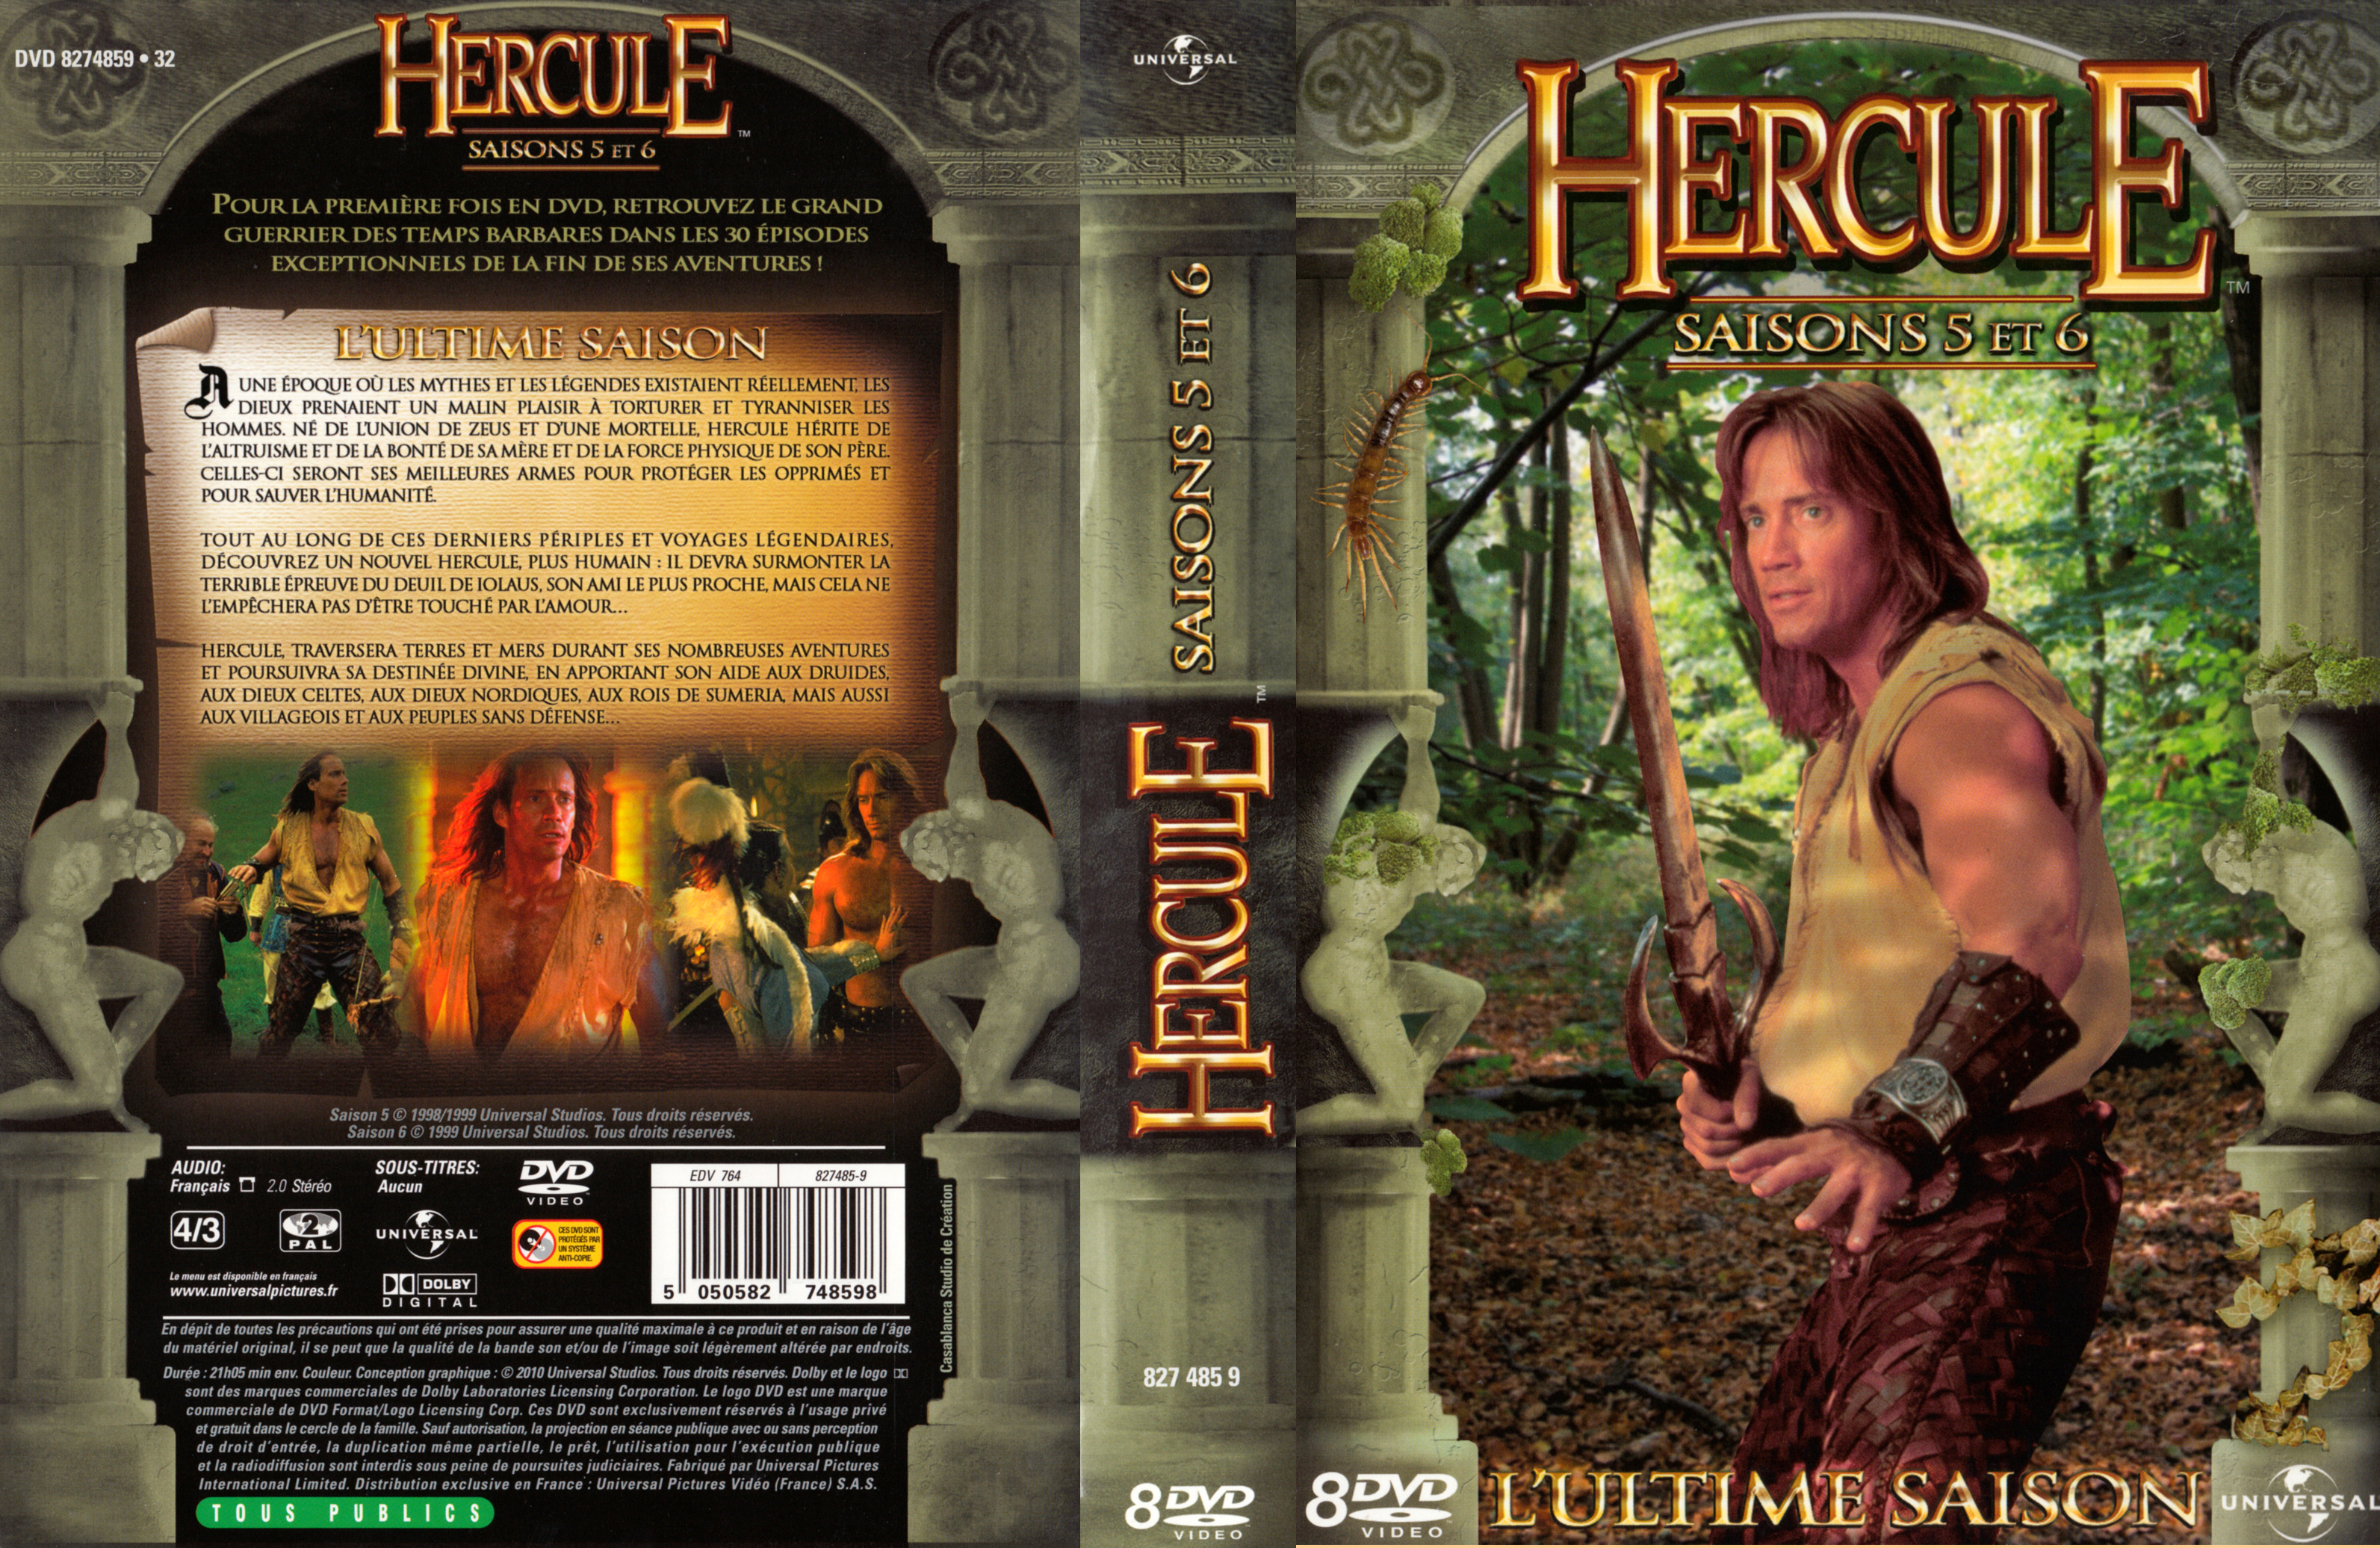 Jaquette DVD Hercule Saison 5 et 6 COFFRET